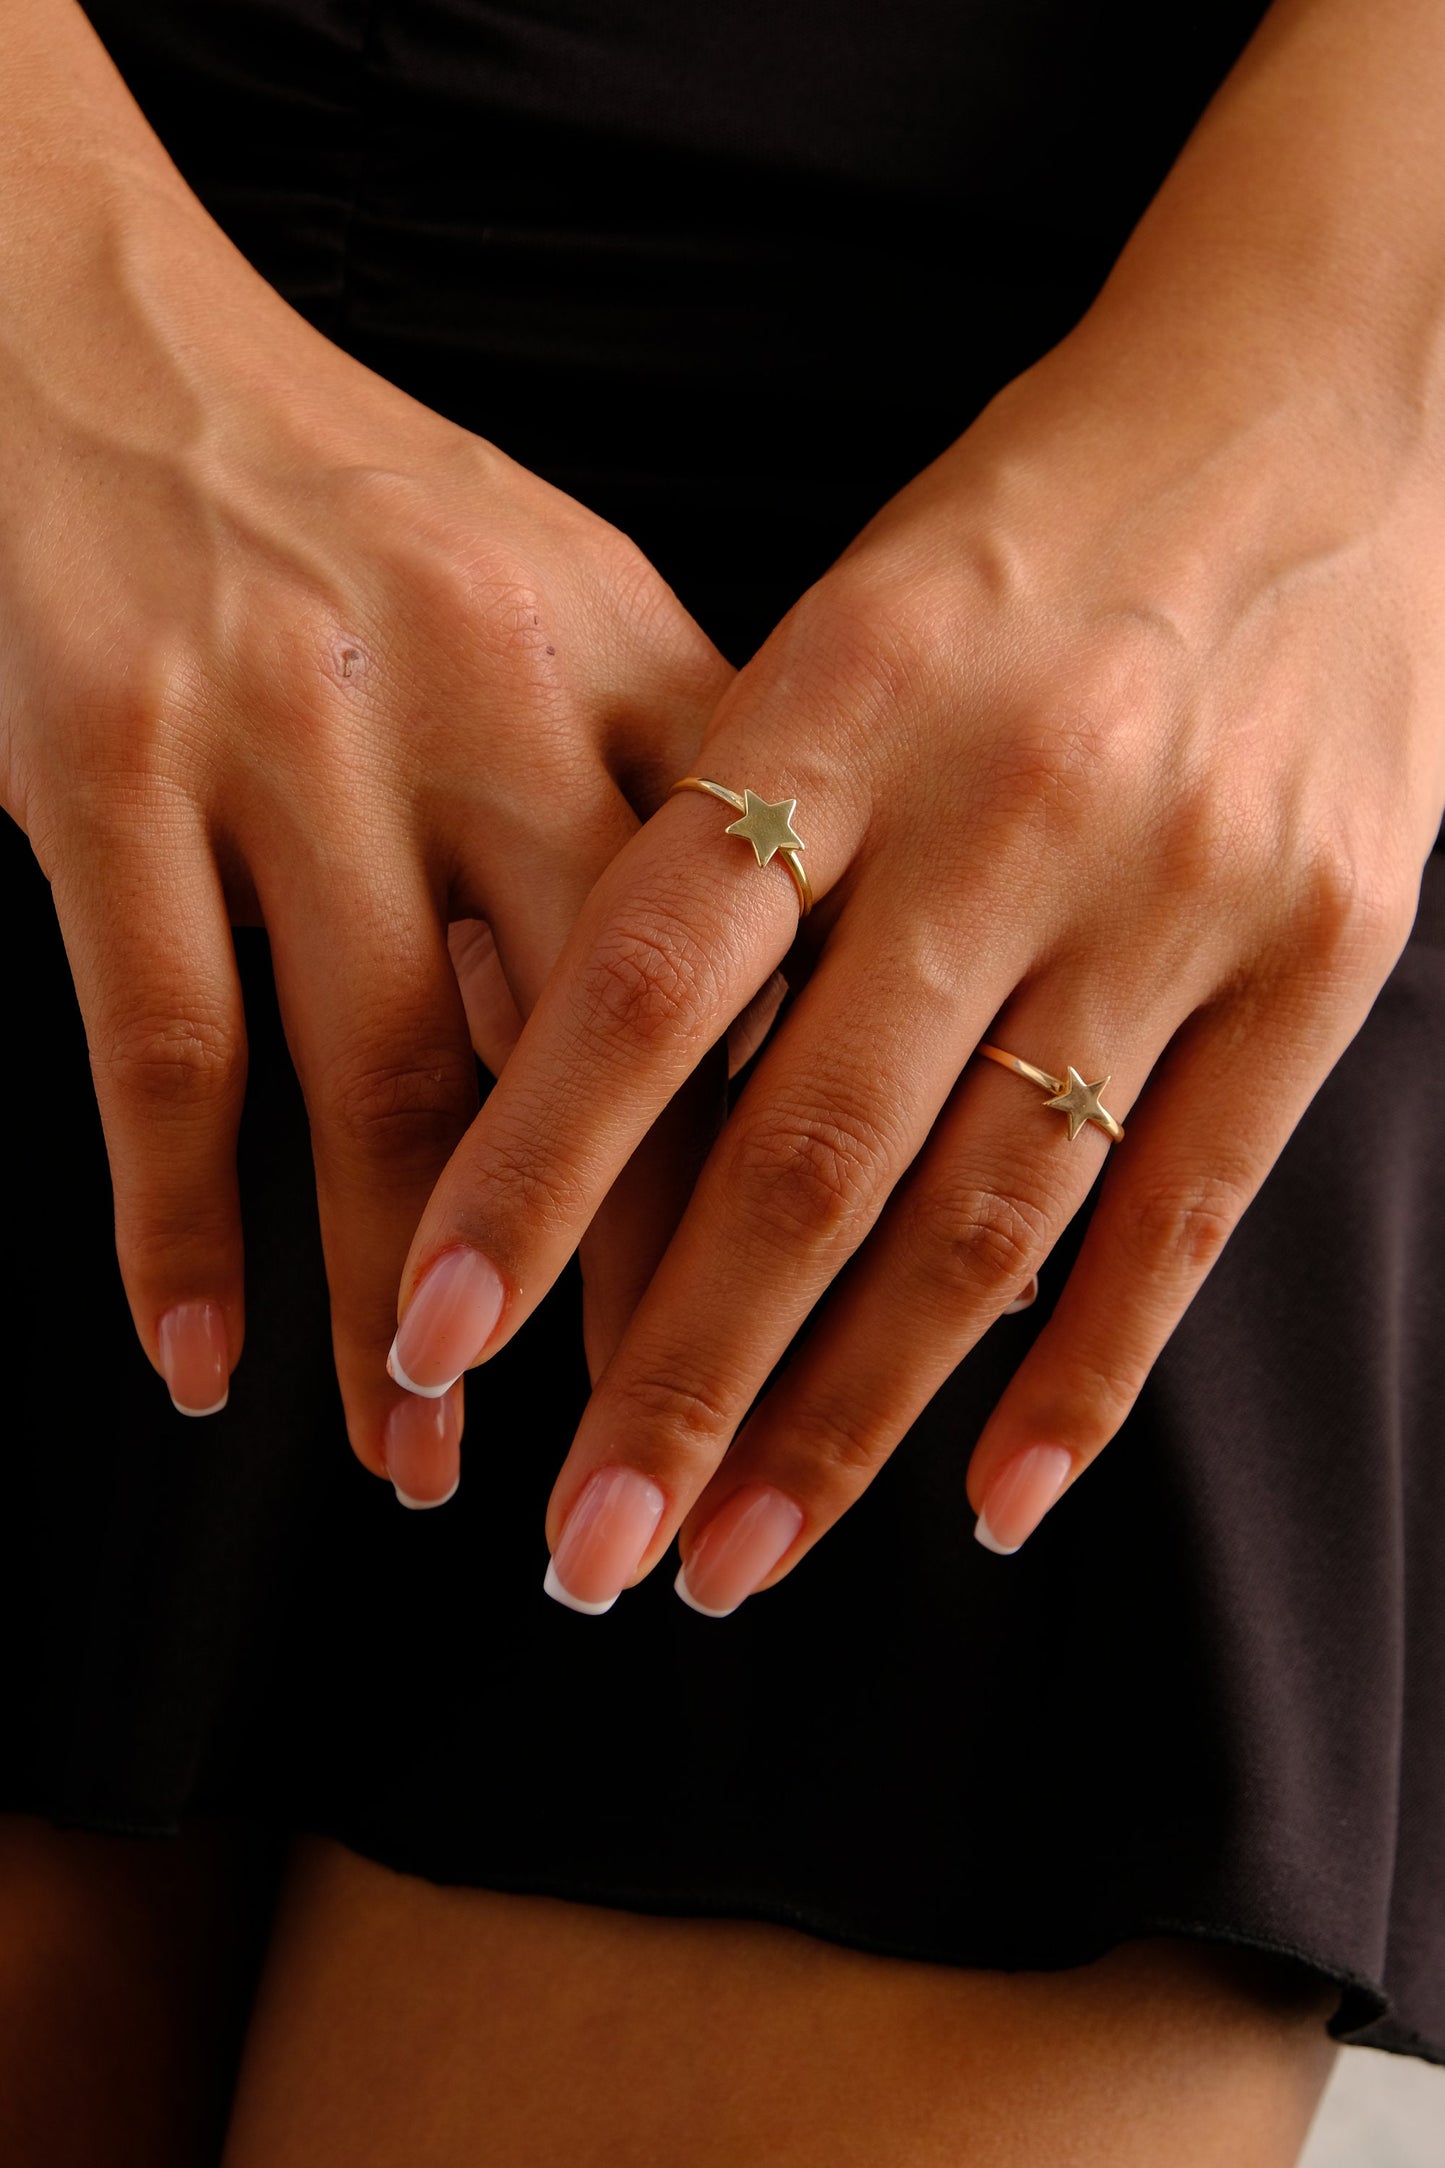 14K Gold Star Ring, Celestial Gold Band Ring, Minimalist Gold Ring, Stacking Ring, Lucky Star Ring, Starburst Ring, Gift For Her